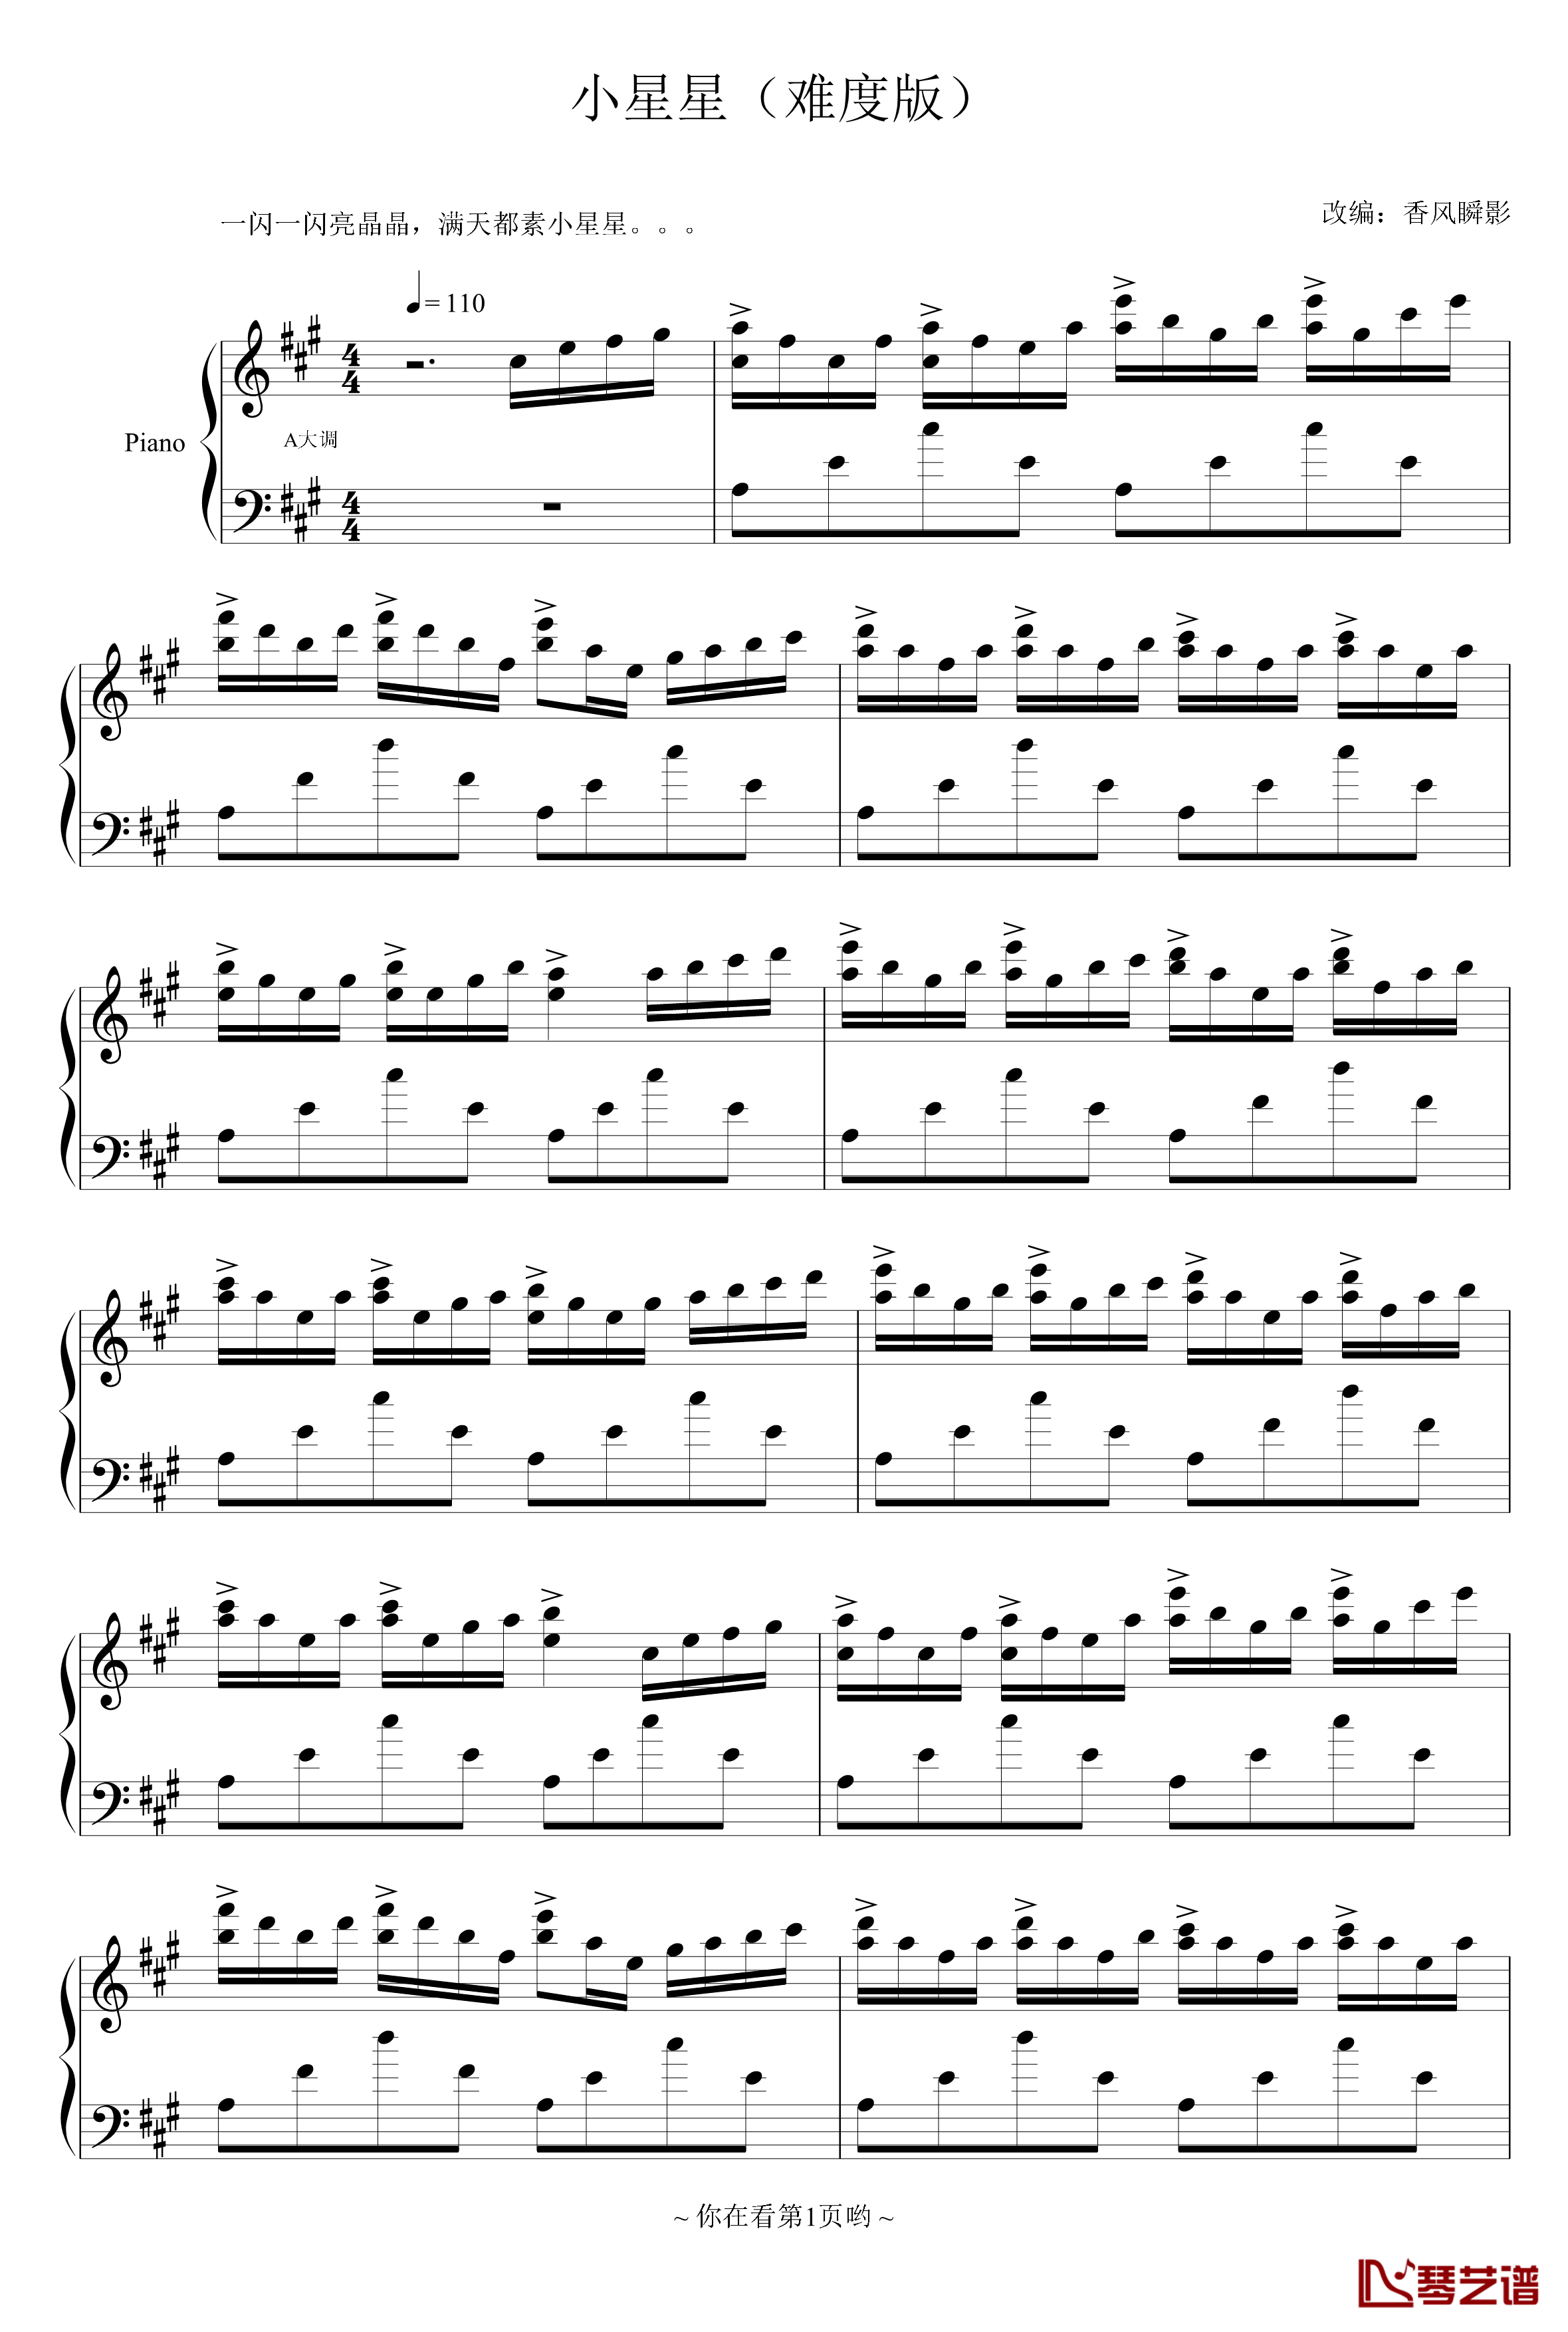 小星星钢琴谱-难度版-世界名曲1